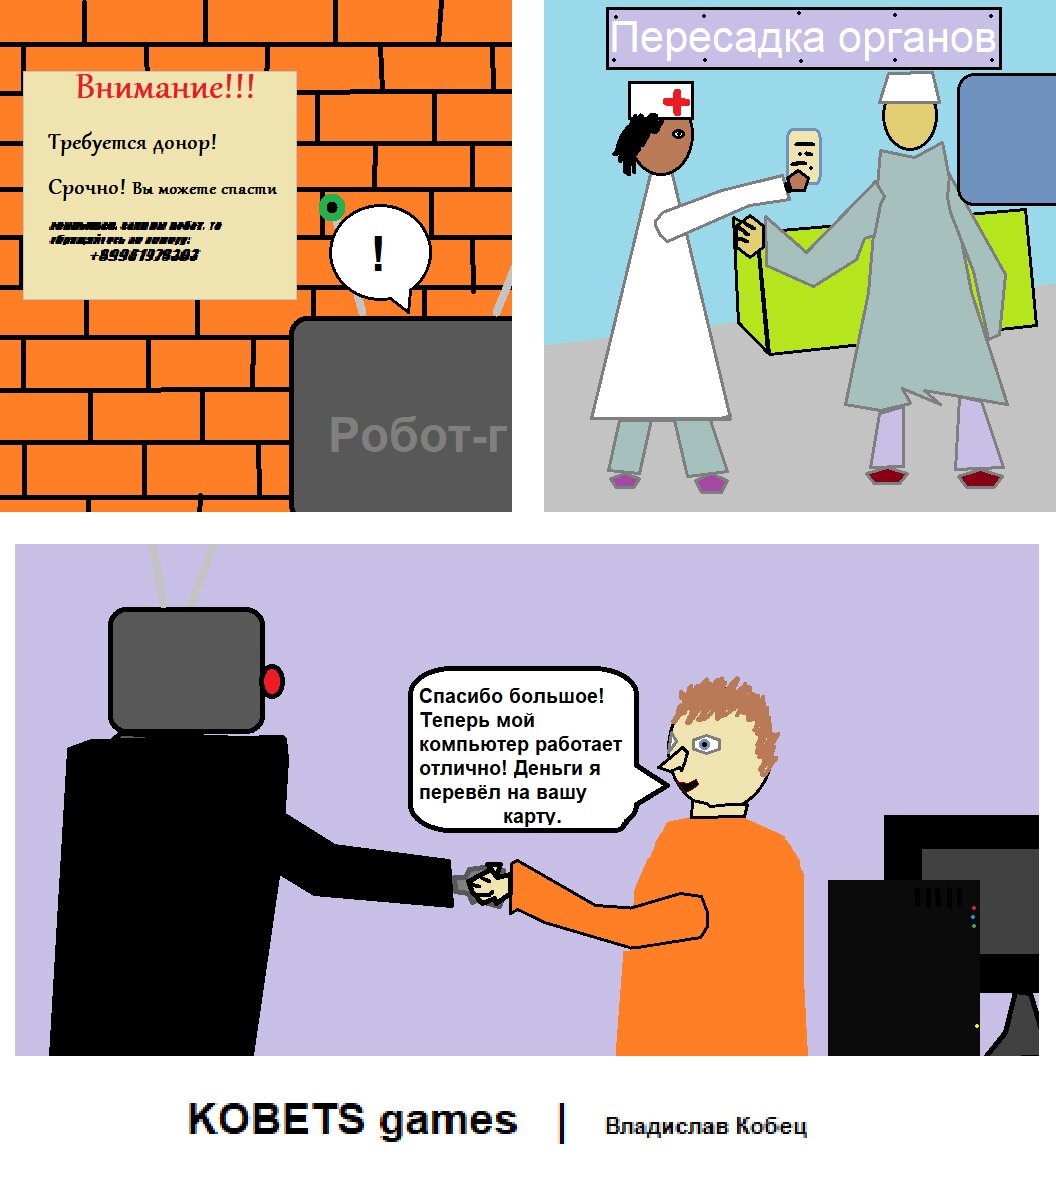 Донор 7. Комикс про робота горничную и ядерную войну.